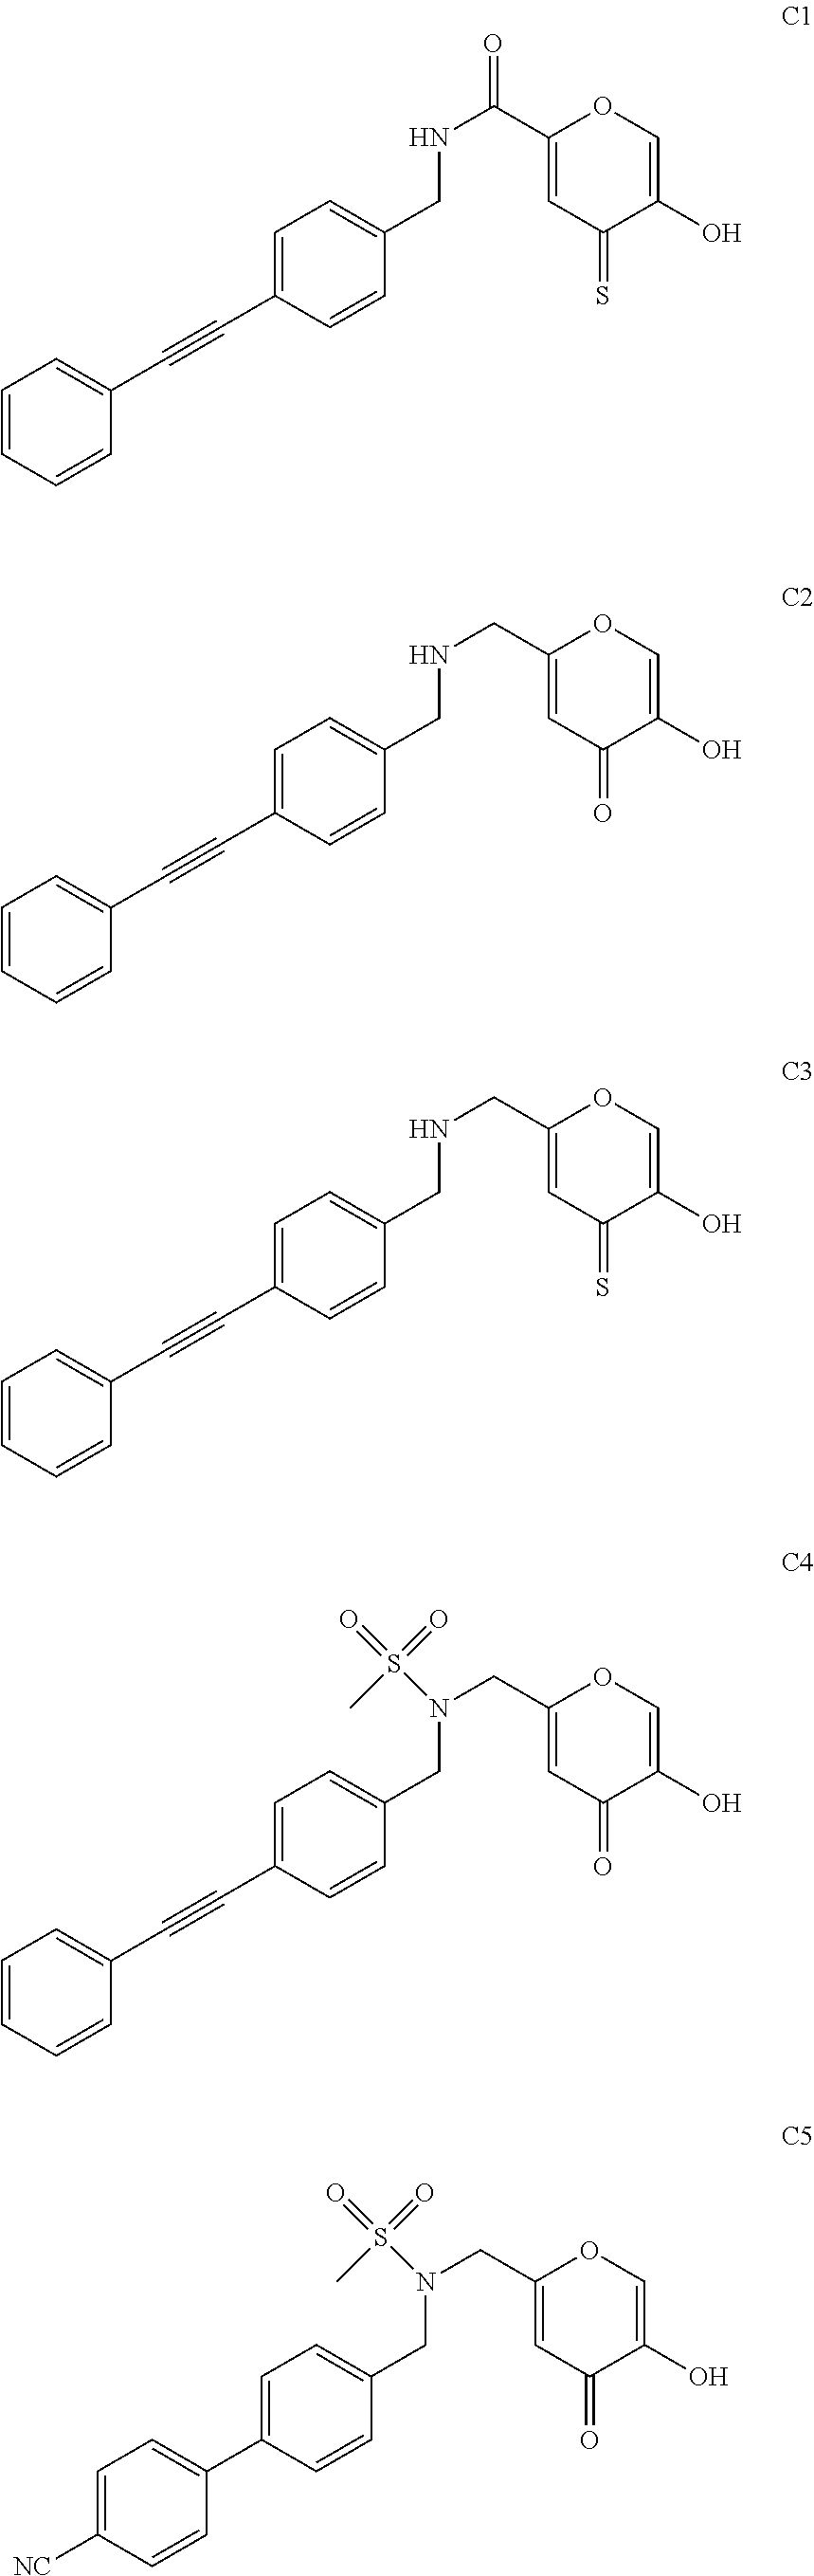 Inhibitors of lpxc